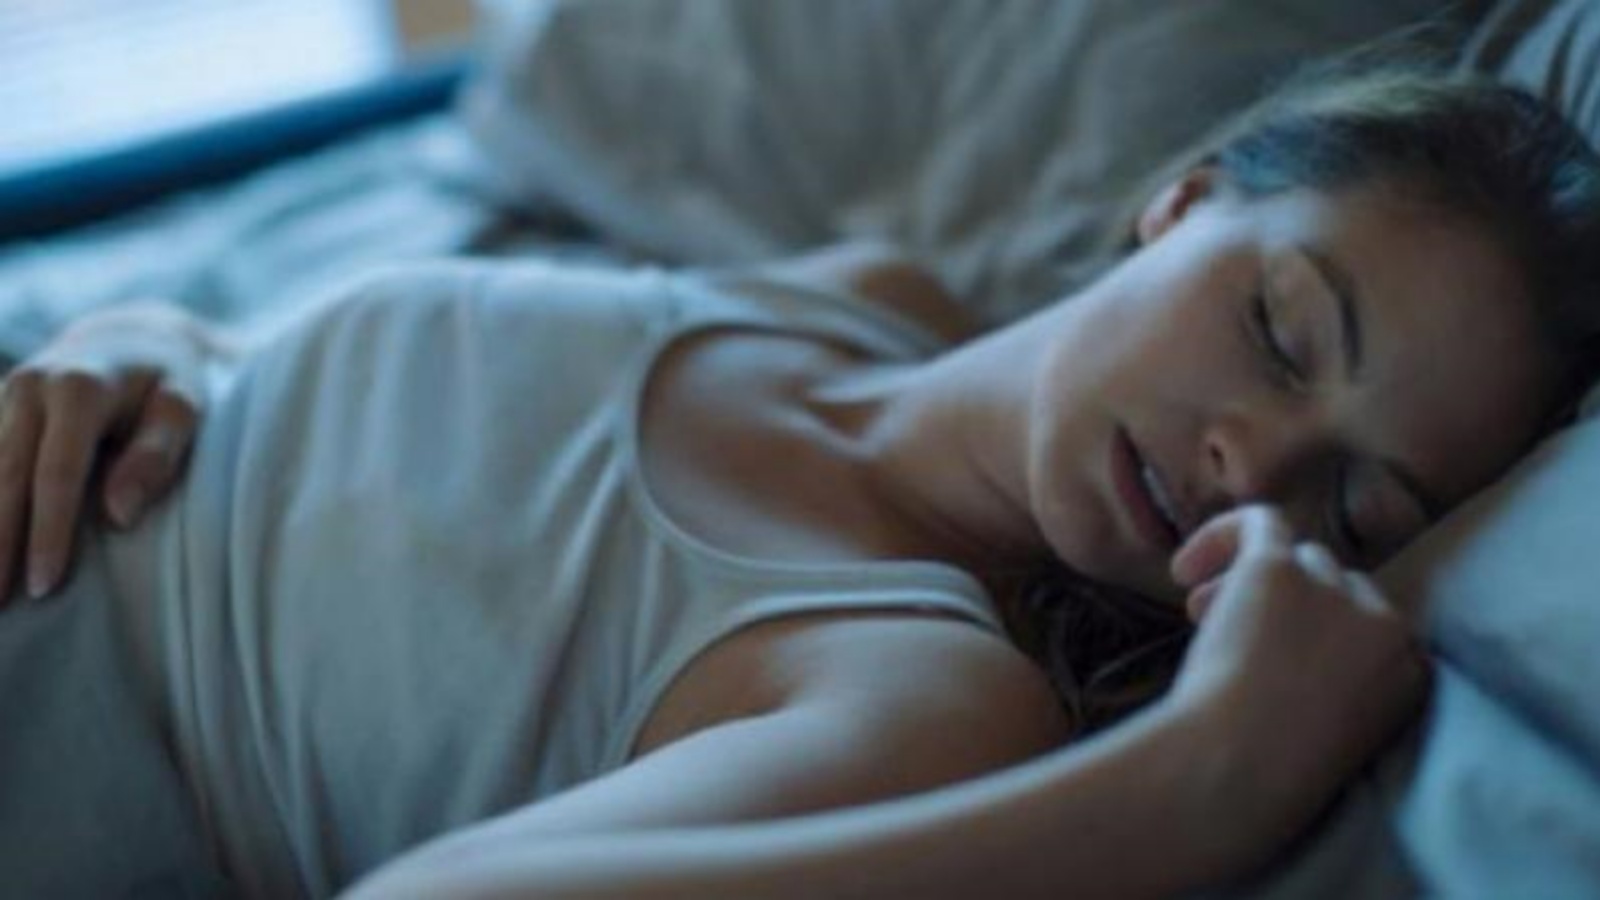 عادة ما يكون التكلم أثناء النوم غير ضار، لكنه قد يشير إلى اضطراب أو مشكلة صحية أكثر خطورة